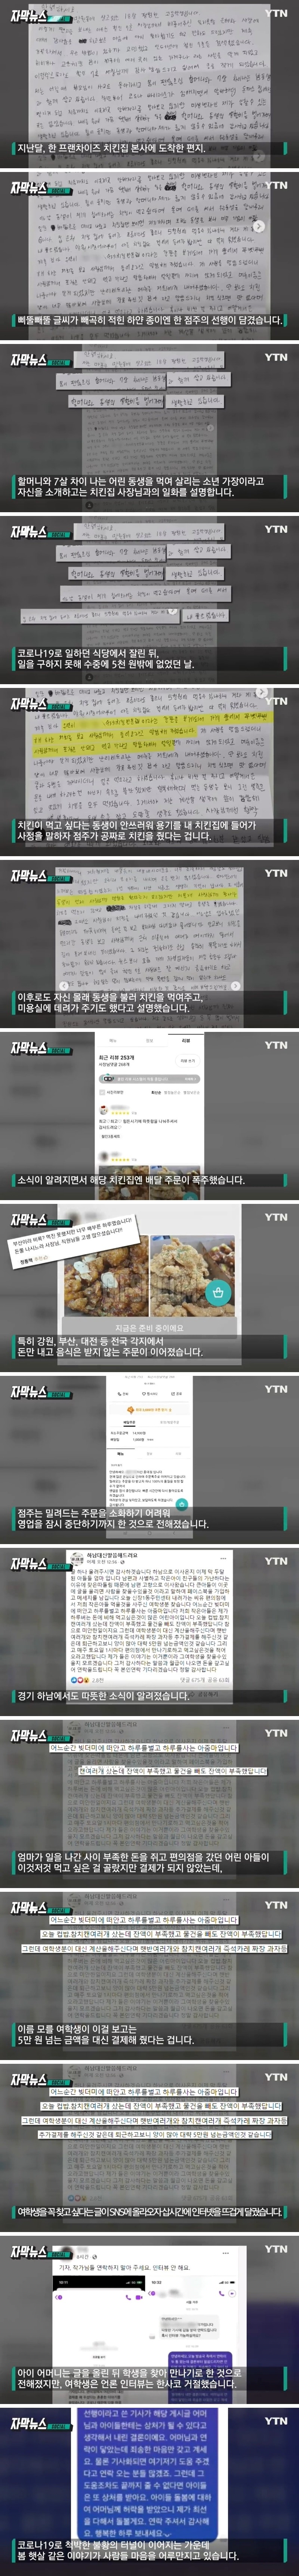 네티즌 ',돈쭐',에 영업중단.한 치킨집에 무슨 일이.jpg